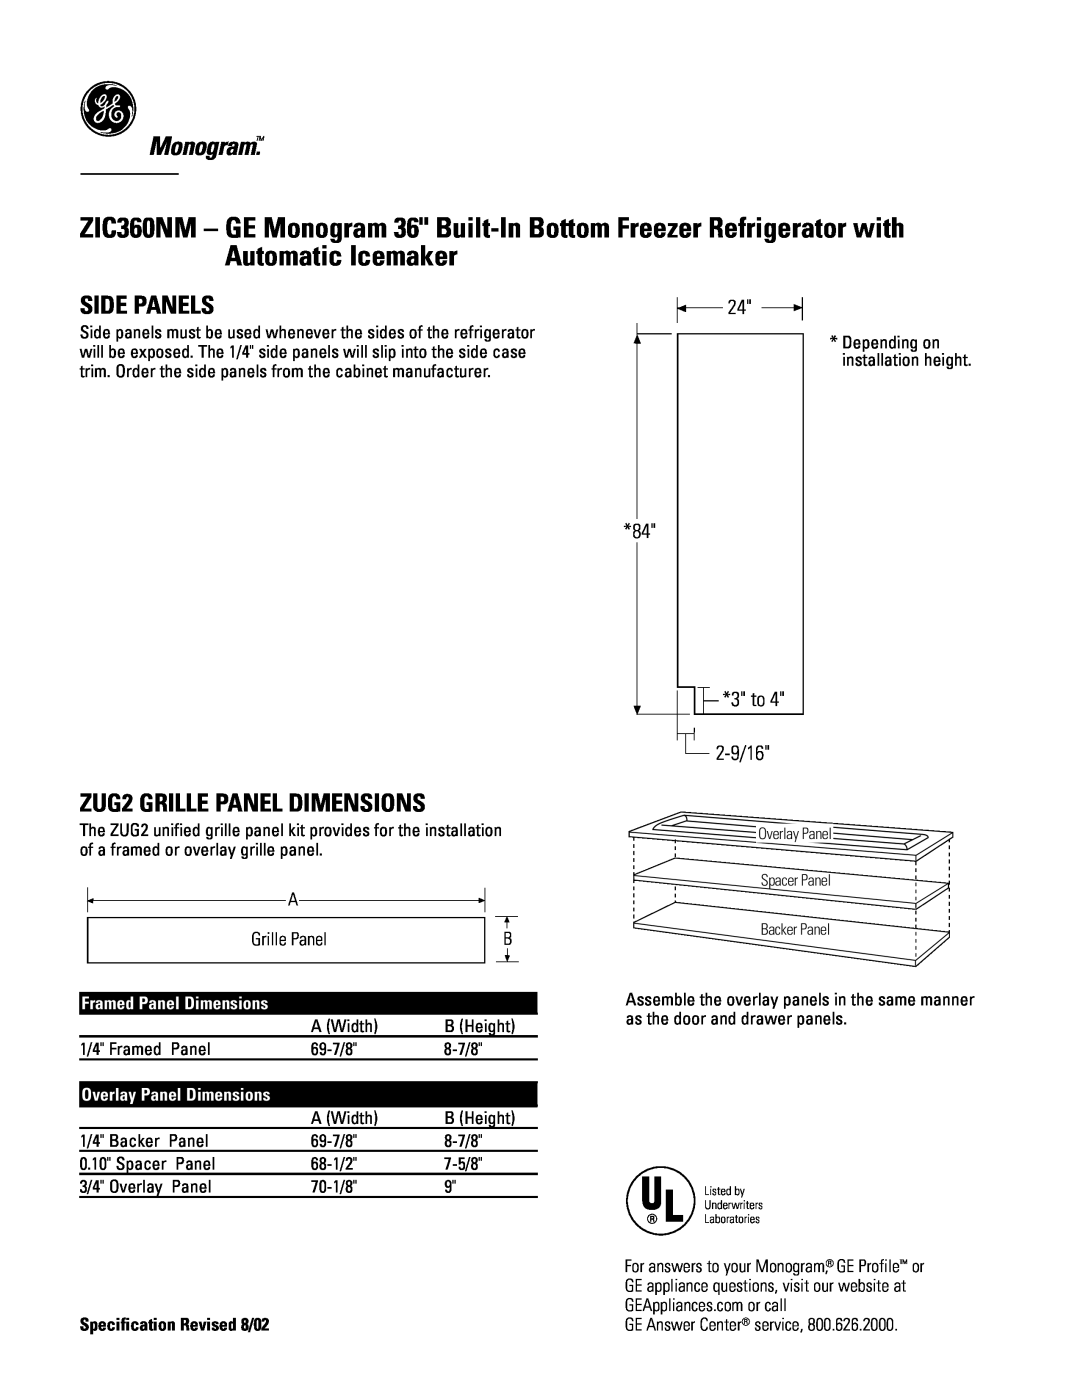 GE Monogram ZIC360NM dimensions Side Panels, ZUG2 GRILLE PANEL DIMENSIONS, Monogram, 3 to 2-9/16, Grille Panel 